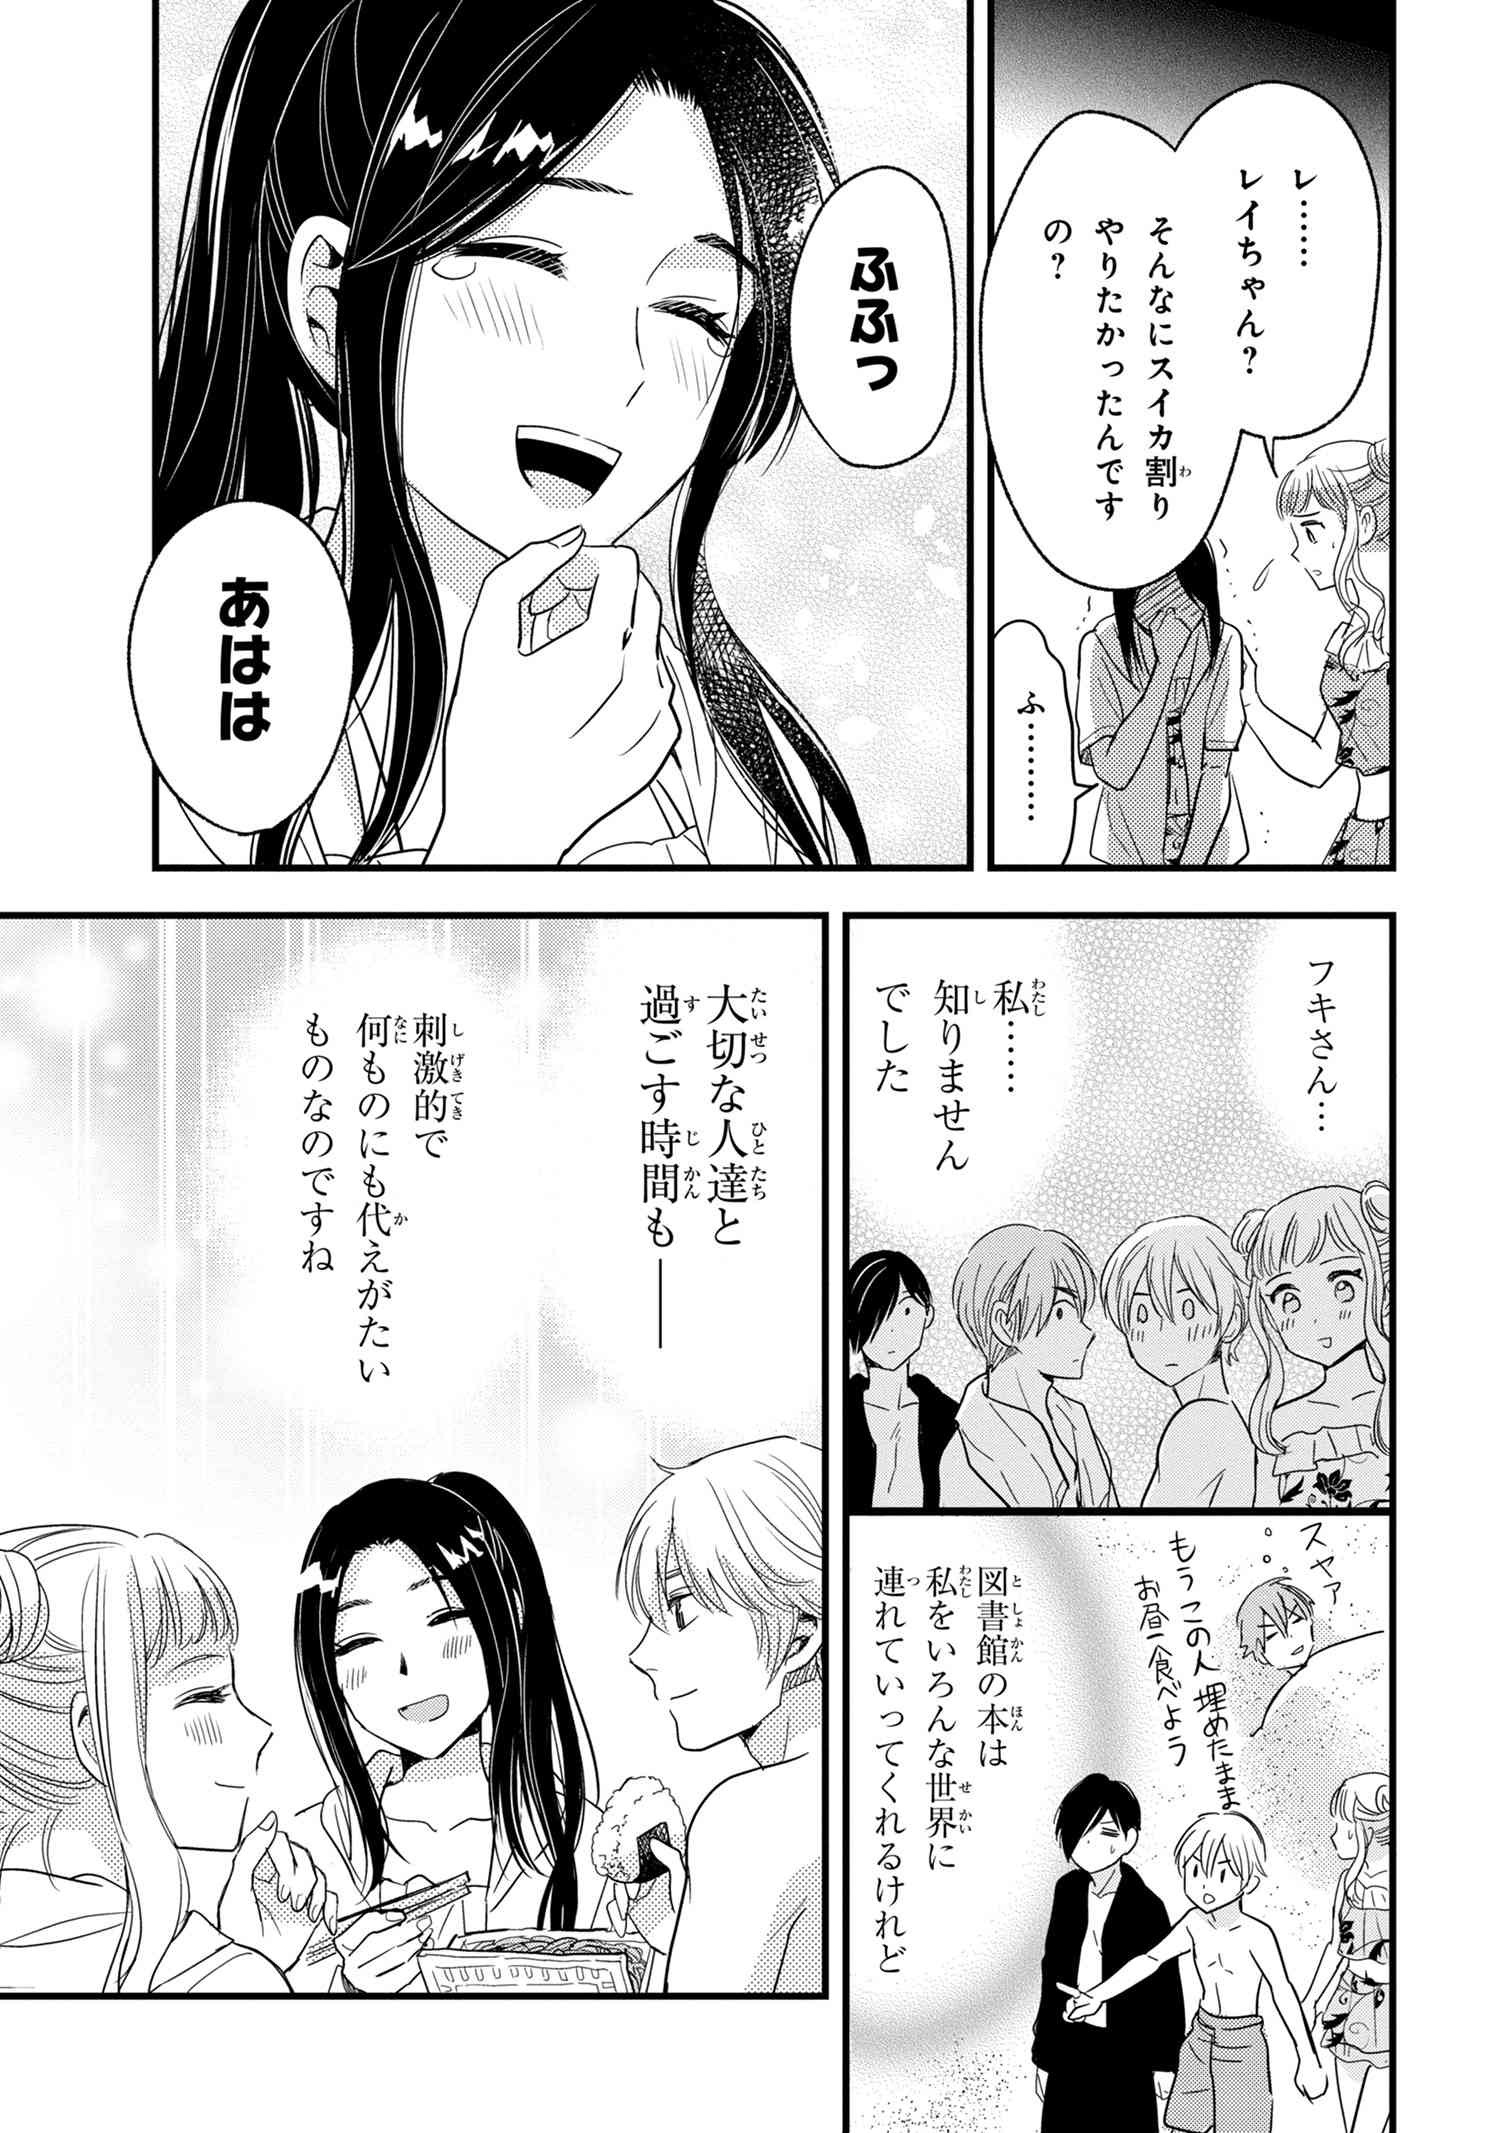 Reiko no Fuugi Akuyaku Reijou to Yobarete imasu ga, tada no Binbou Musume desu - Chapter 12.3 - Page 3